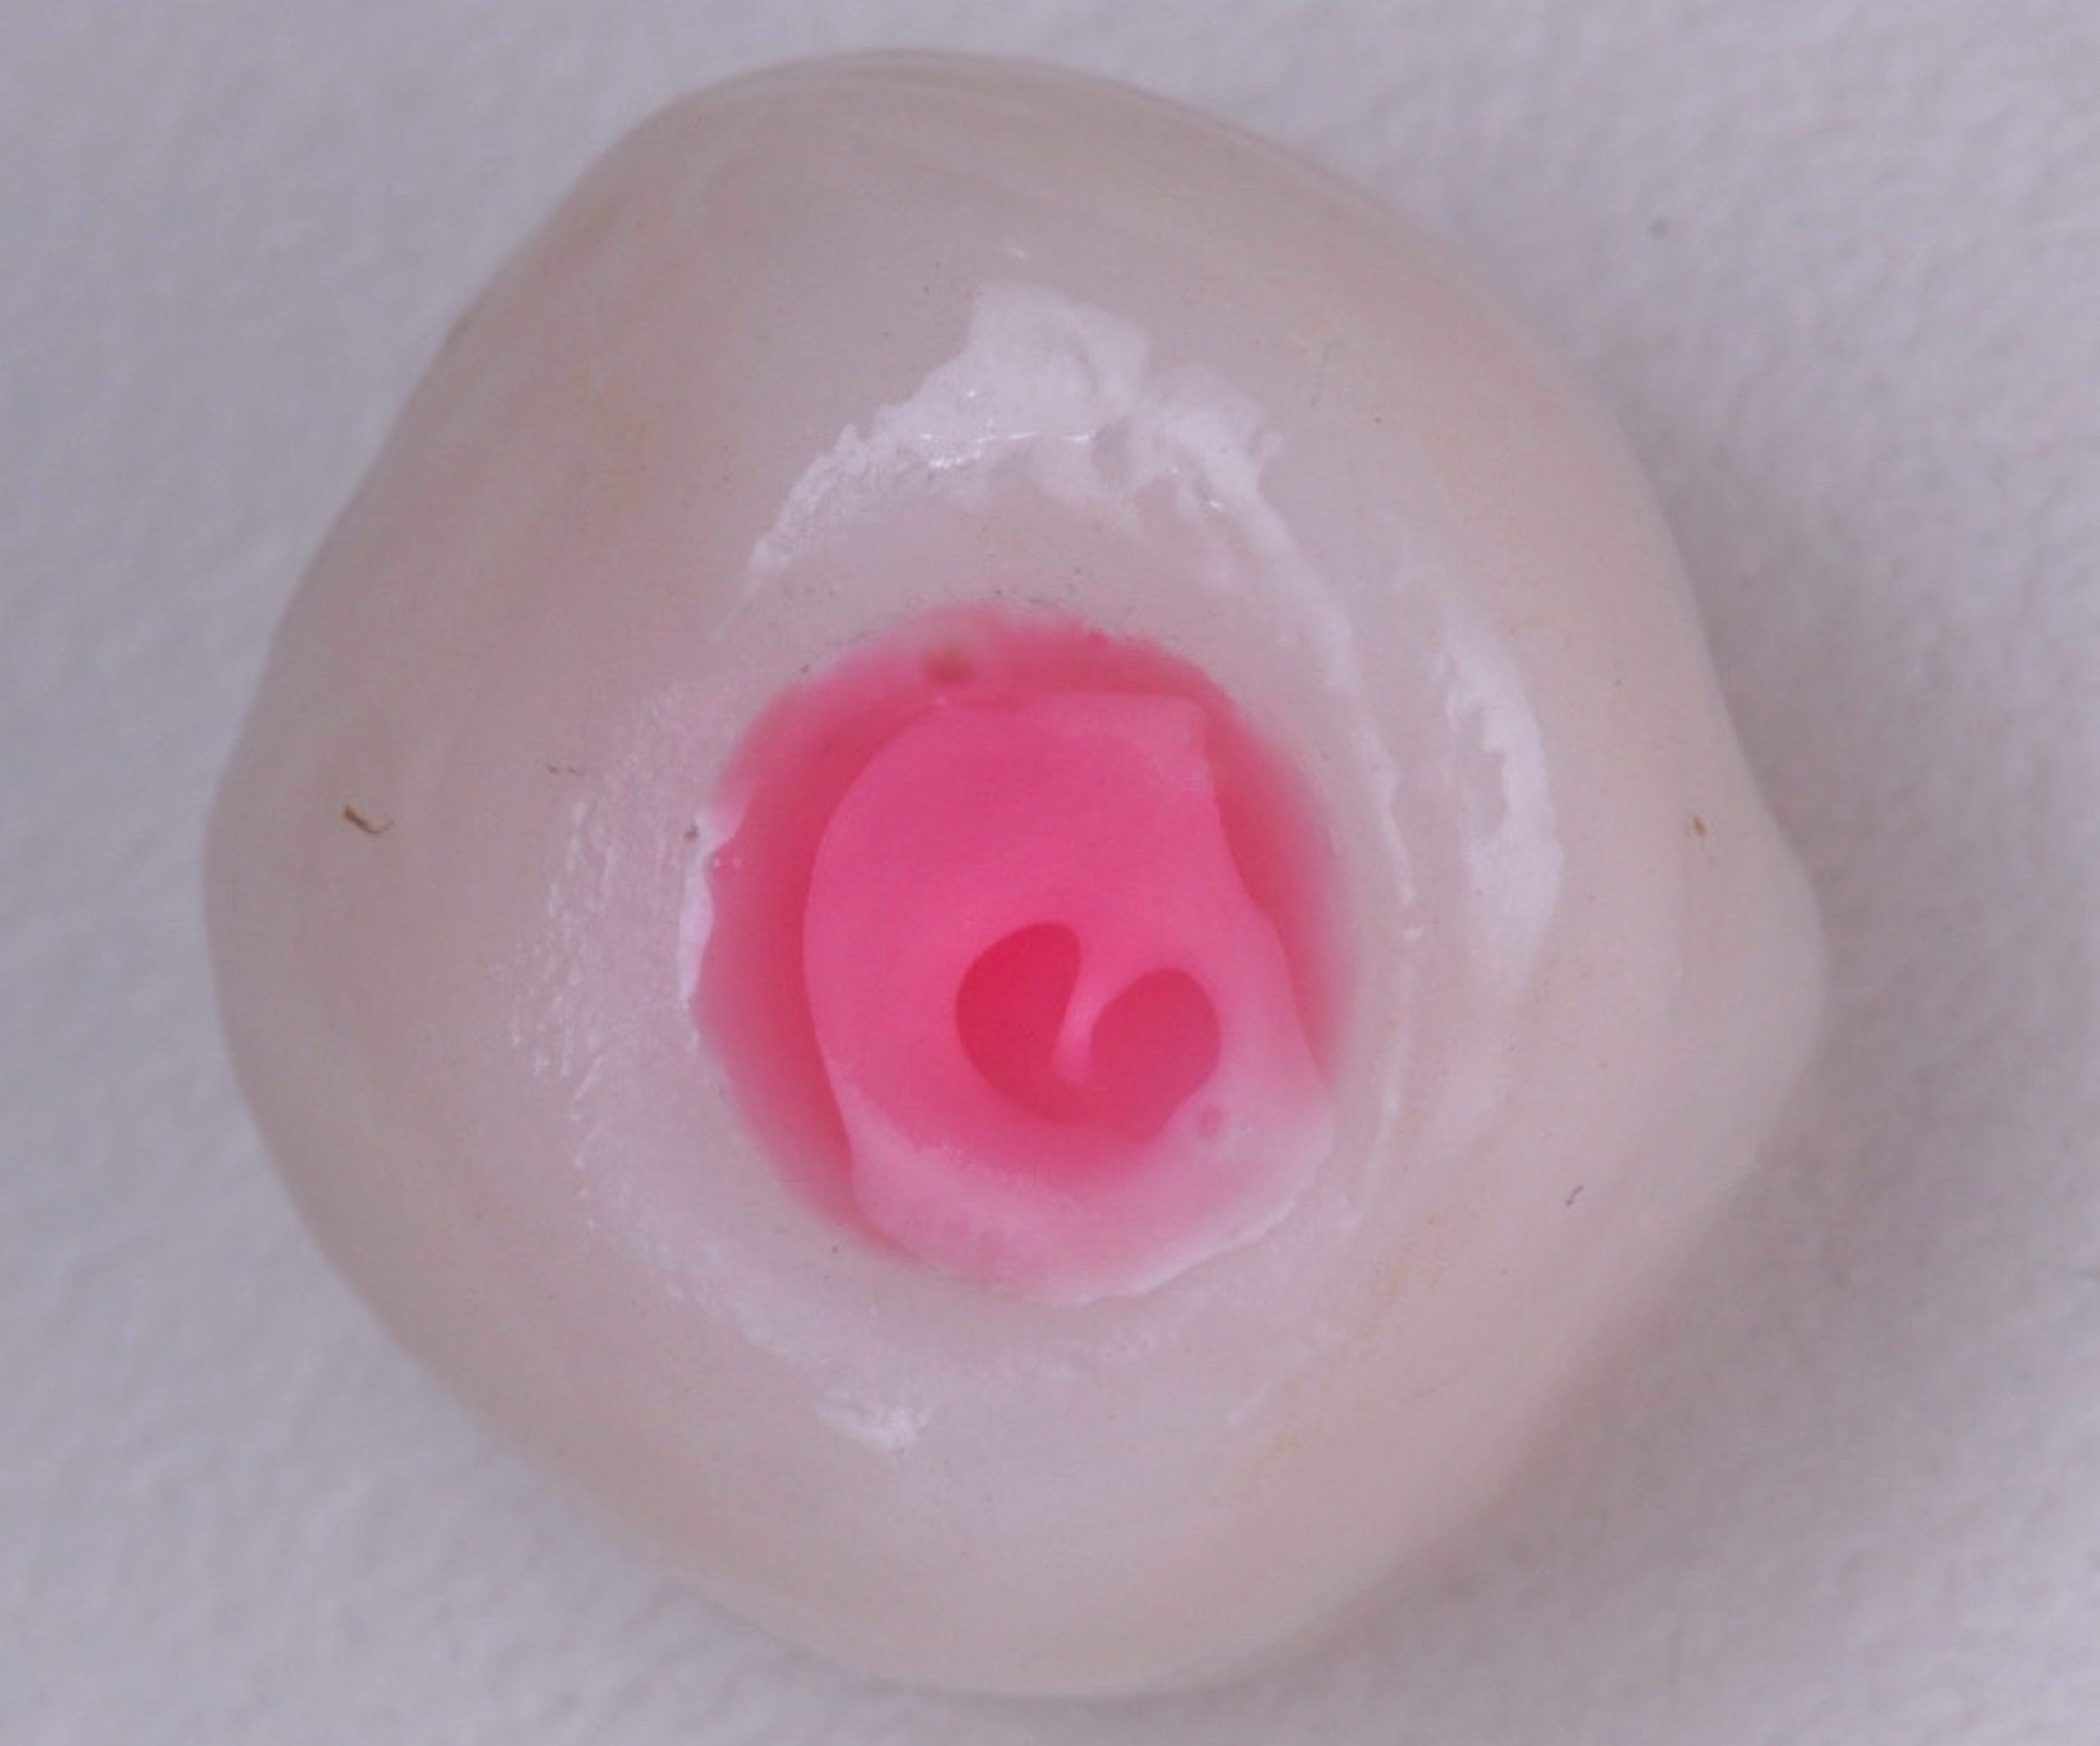 Acido fluoridrico scaled e1705673885565 - Implante Imediato Arcsys em molar inferior